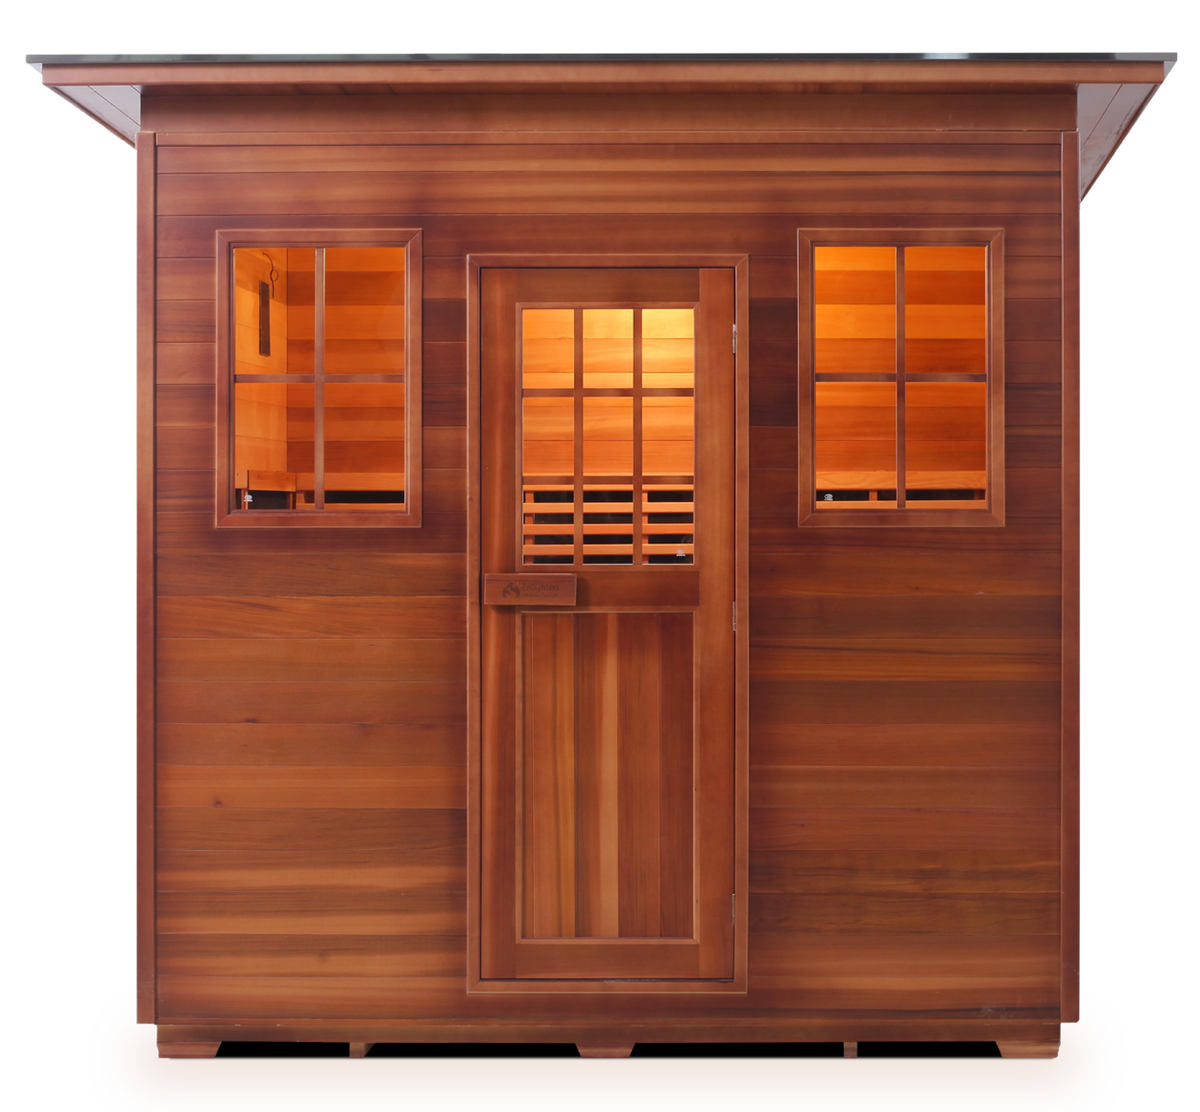 Enlighten Sierra 5 Person Indoor/Outdoor Infrared Sauna